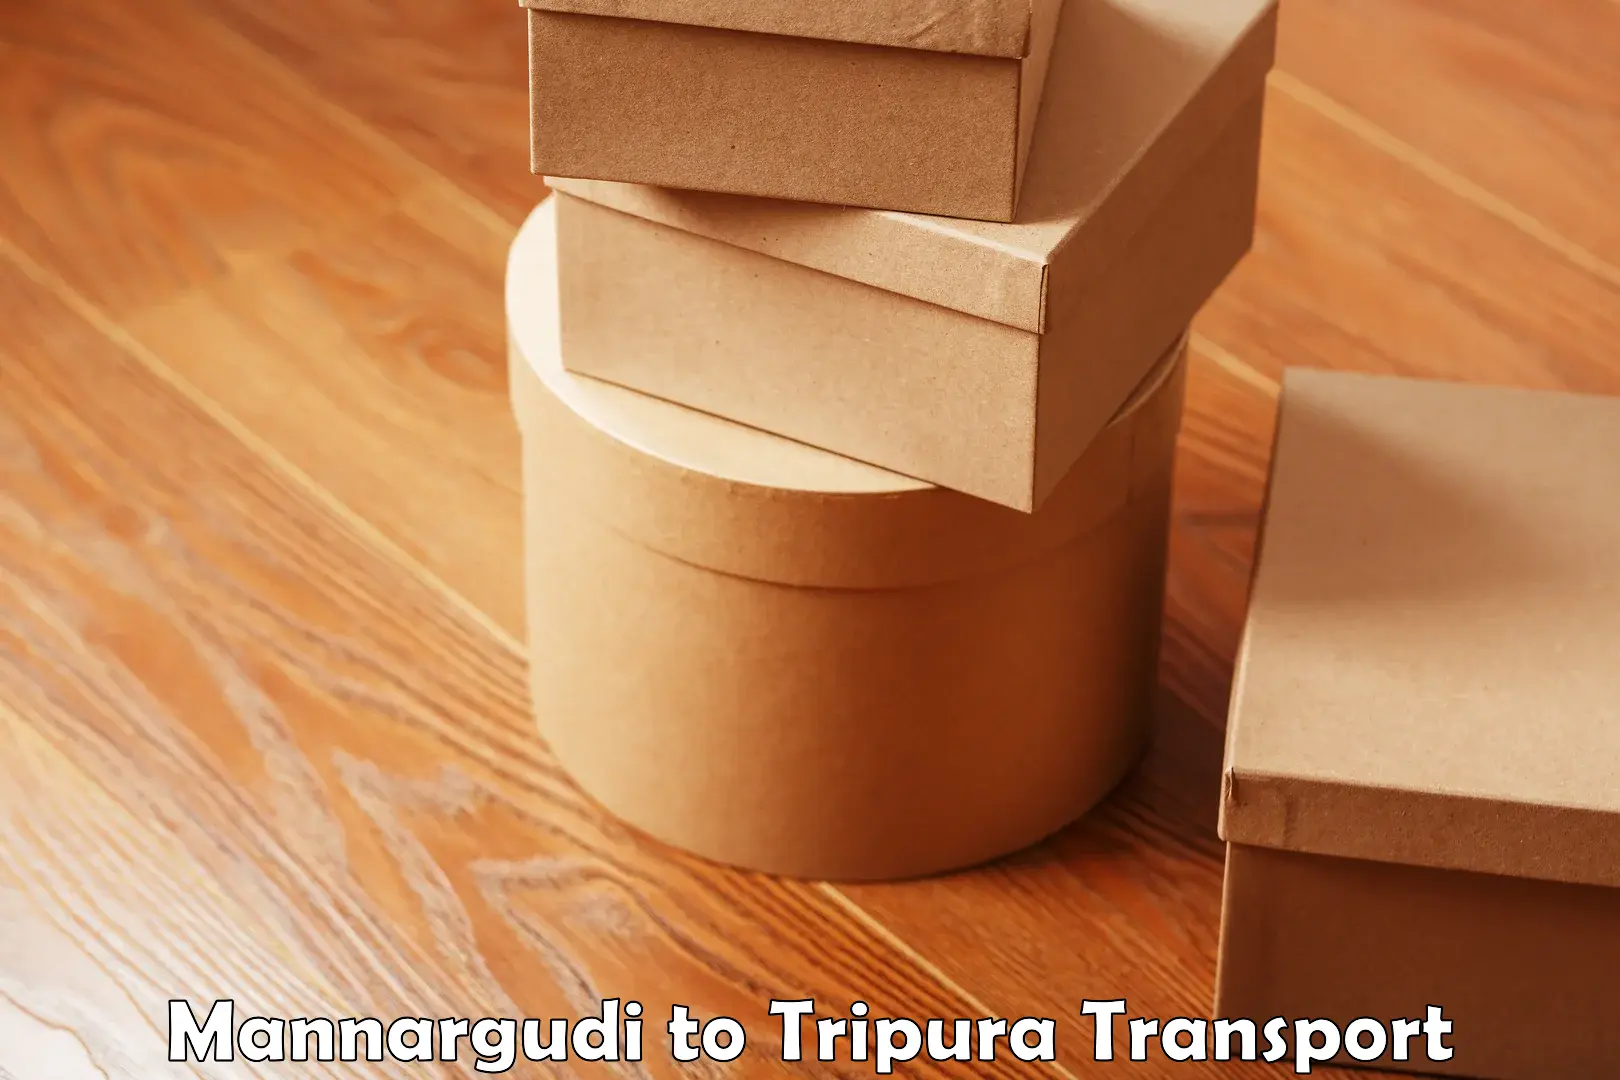 Furniture transport service Mannargudi to North Tripura